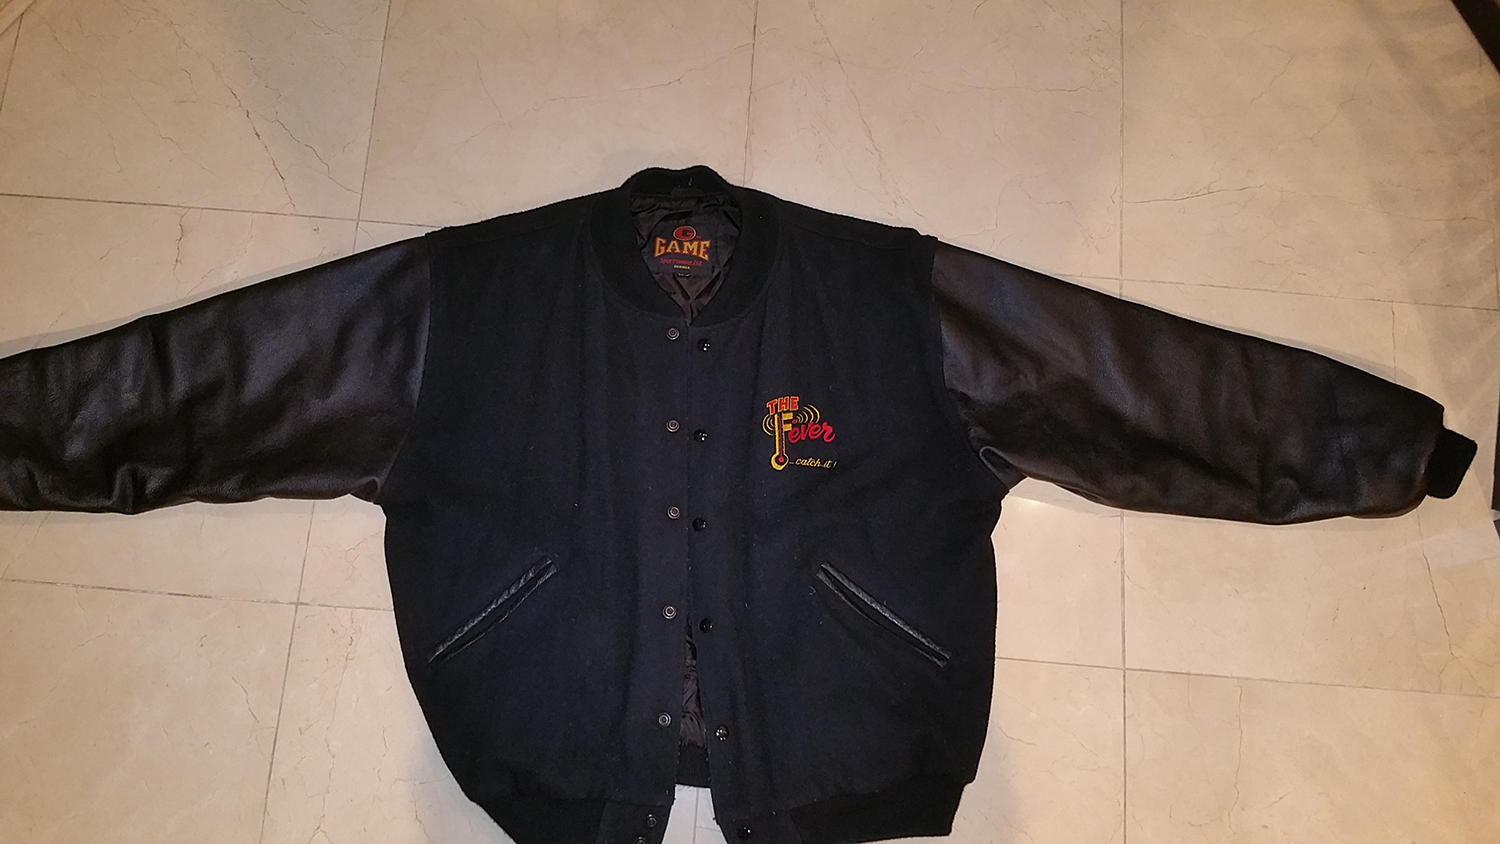 Black leather Jacket